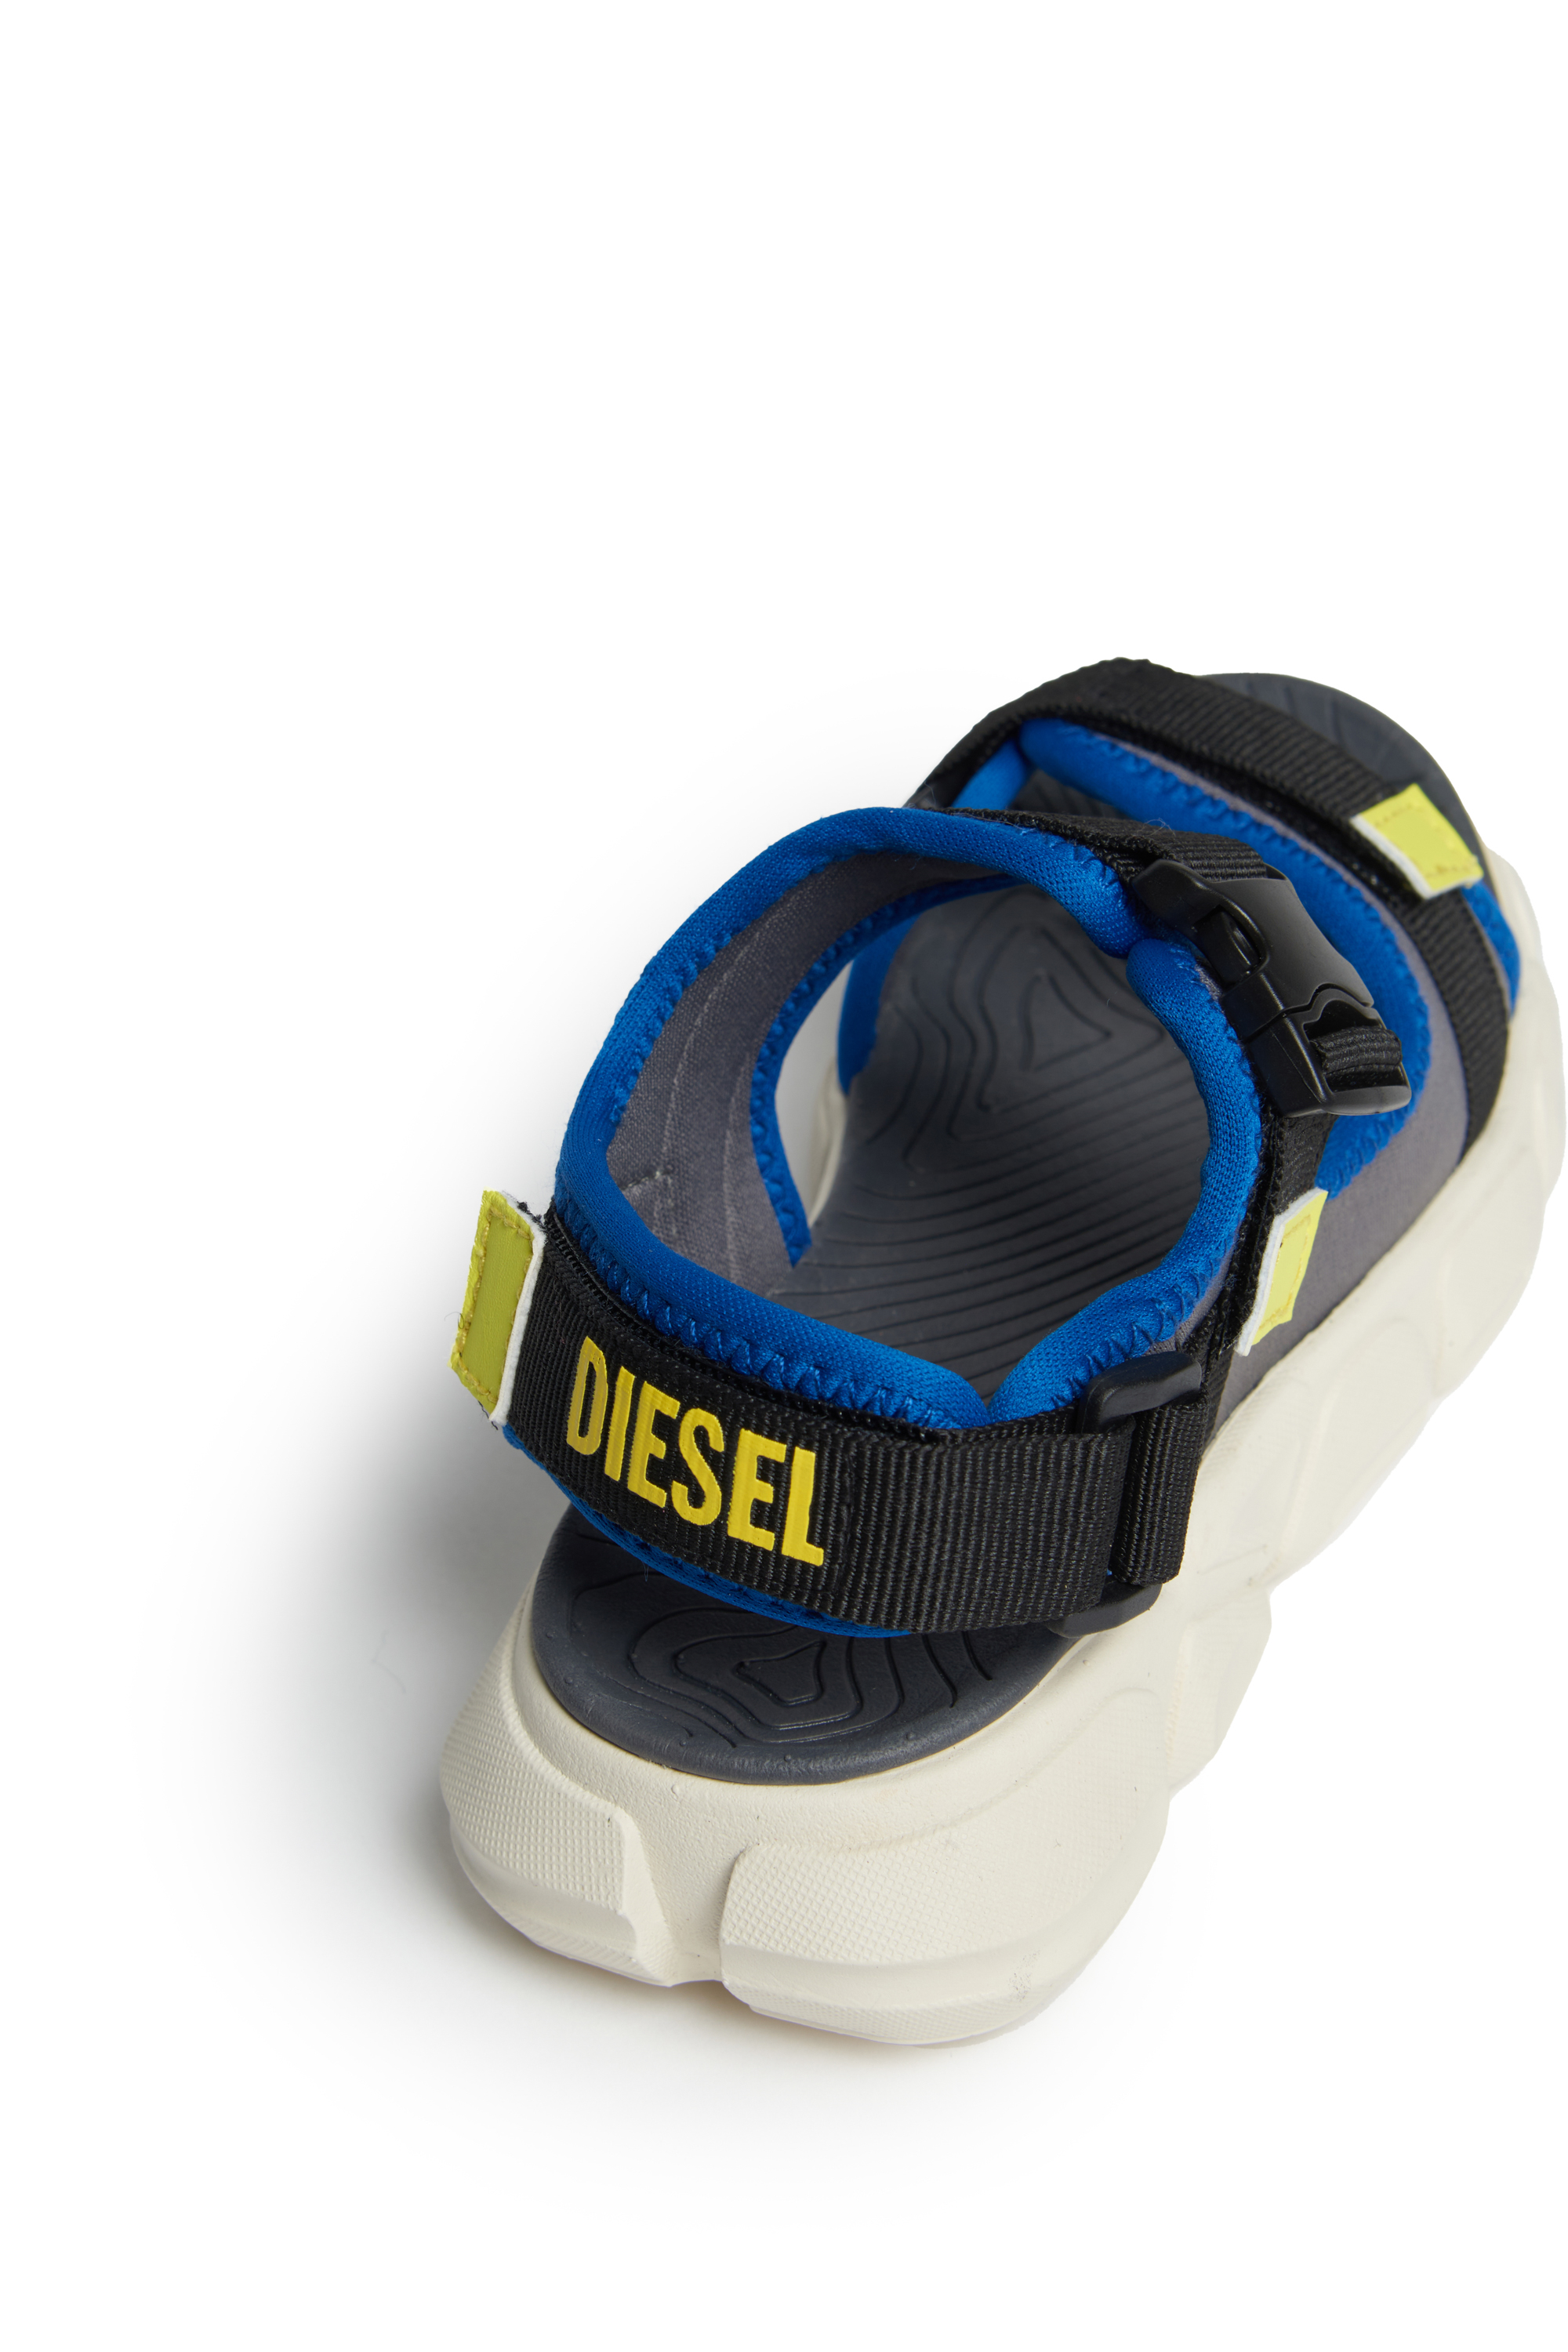 Diesel - S-PORT SX1 BK, Grigio/Blu - Image 4